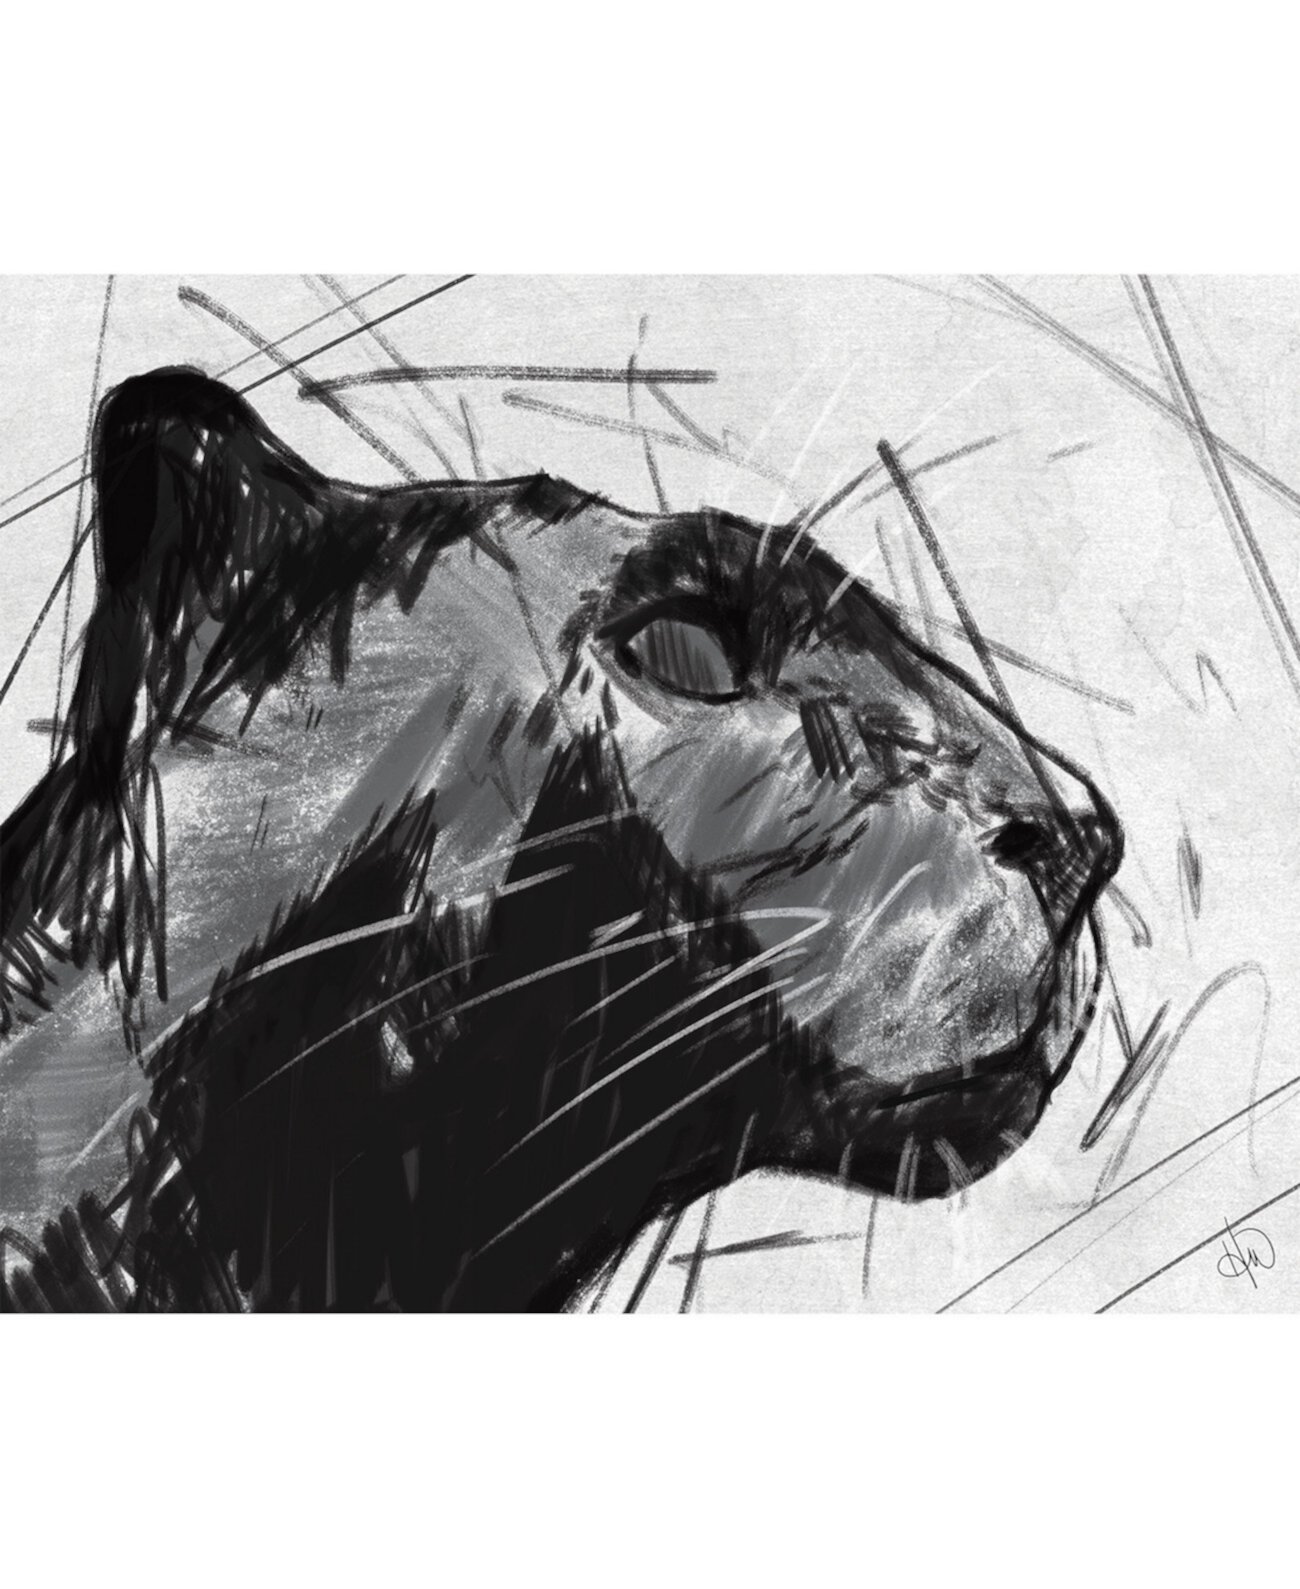 Портрет Черной Пантеры углем 20 "x 24" Художественная печать на металлической стене Creative Gallery